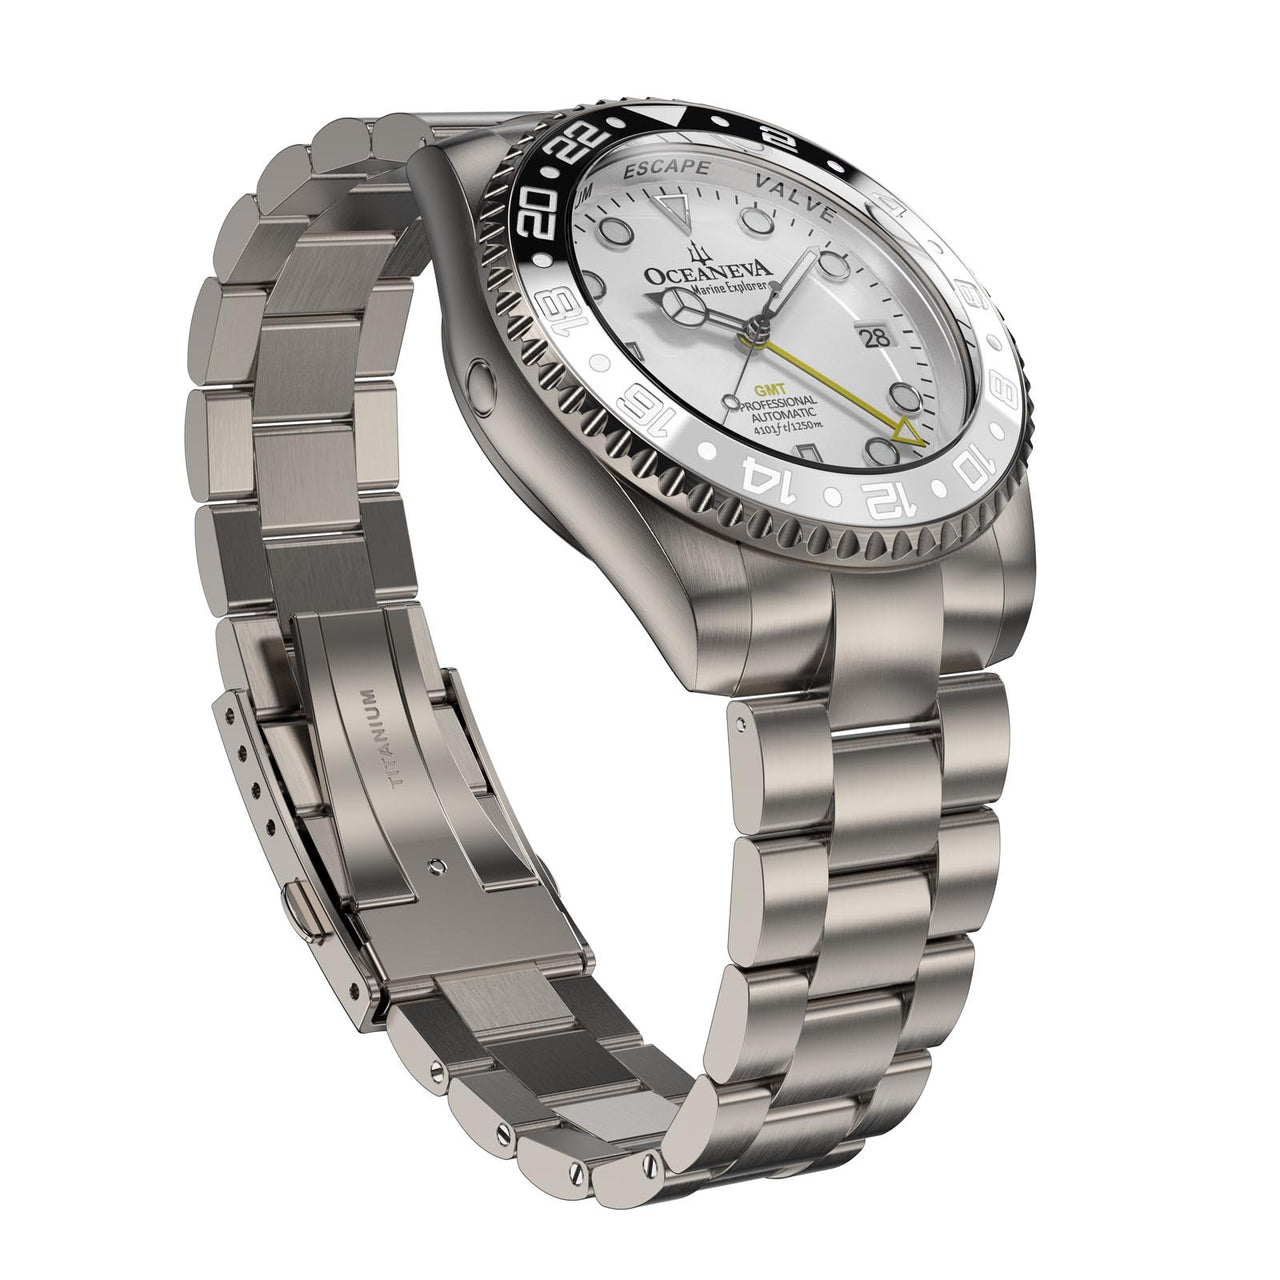 Oceaneva Titanium Automatic Watch with helium escape valve feature